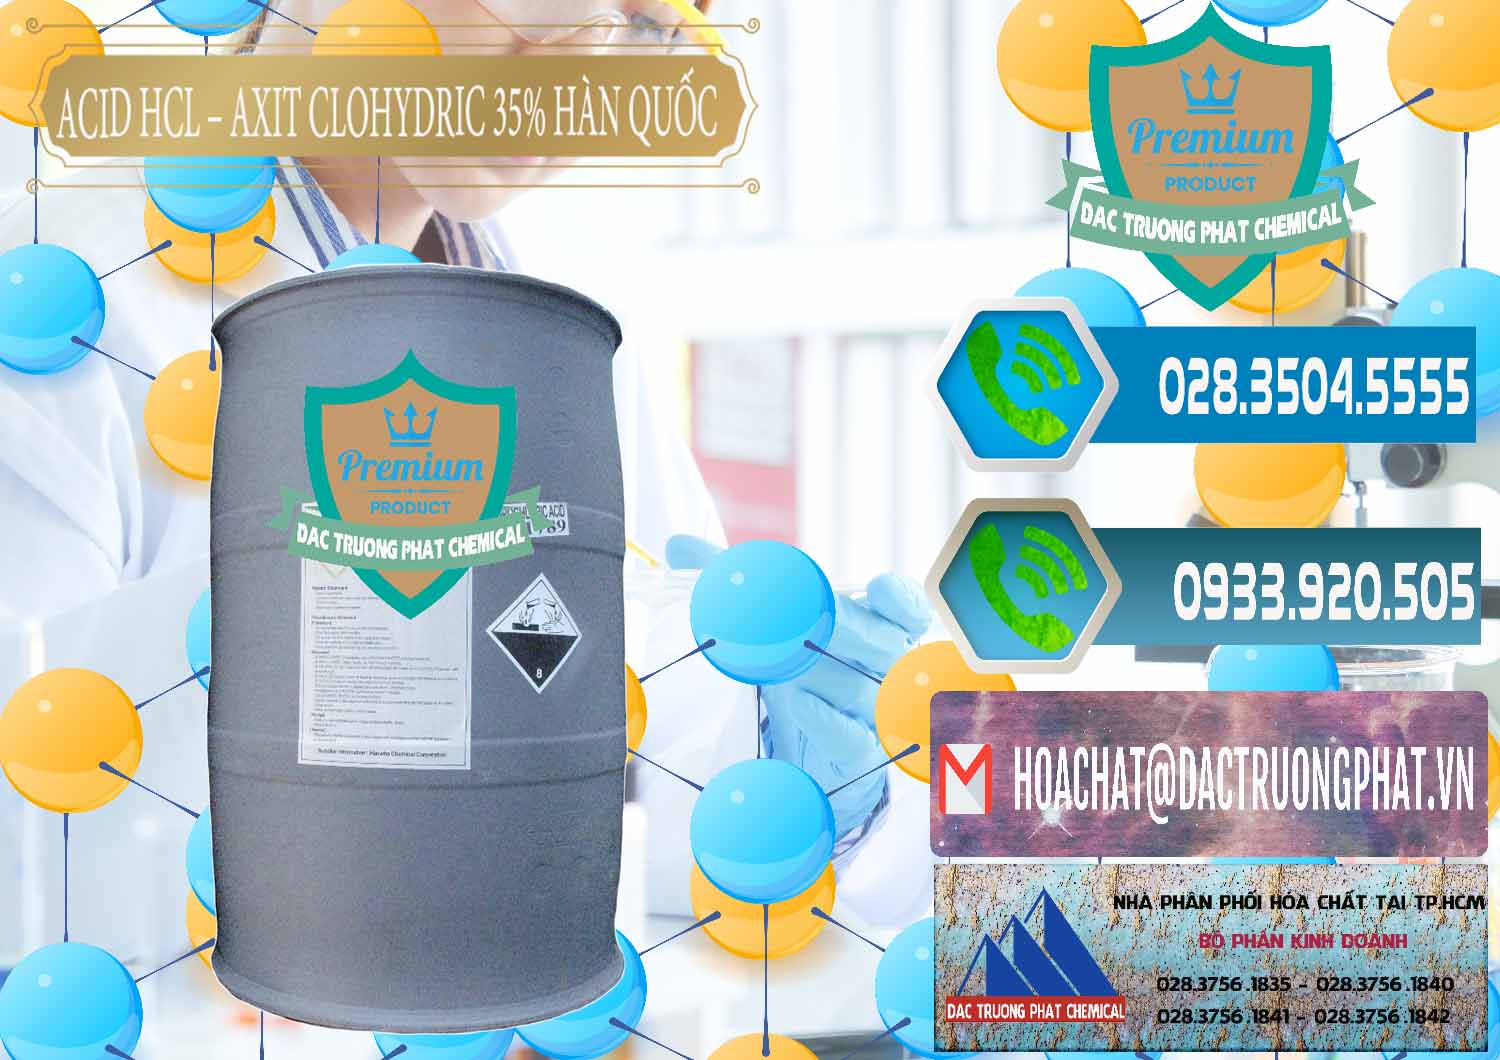 Công ty chuyên cung ứng và bán Acid HCL - Axit Cohidric 35% Hàn Quốc Korea - 0011 - Cty chuyên cung ứng ( phân phối ) hóa chất tại TP.HCM - congtyhoachat.net